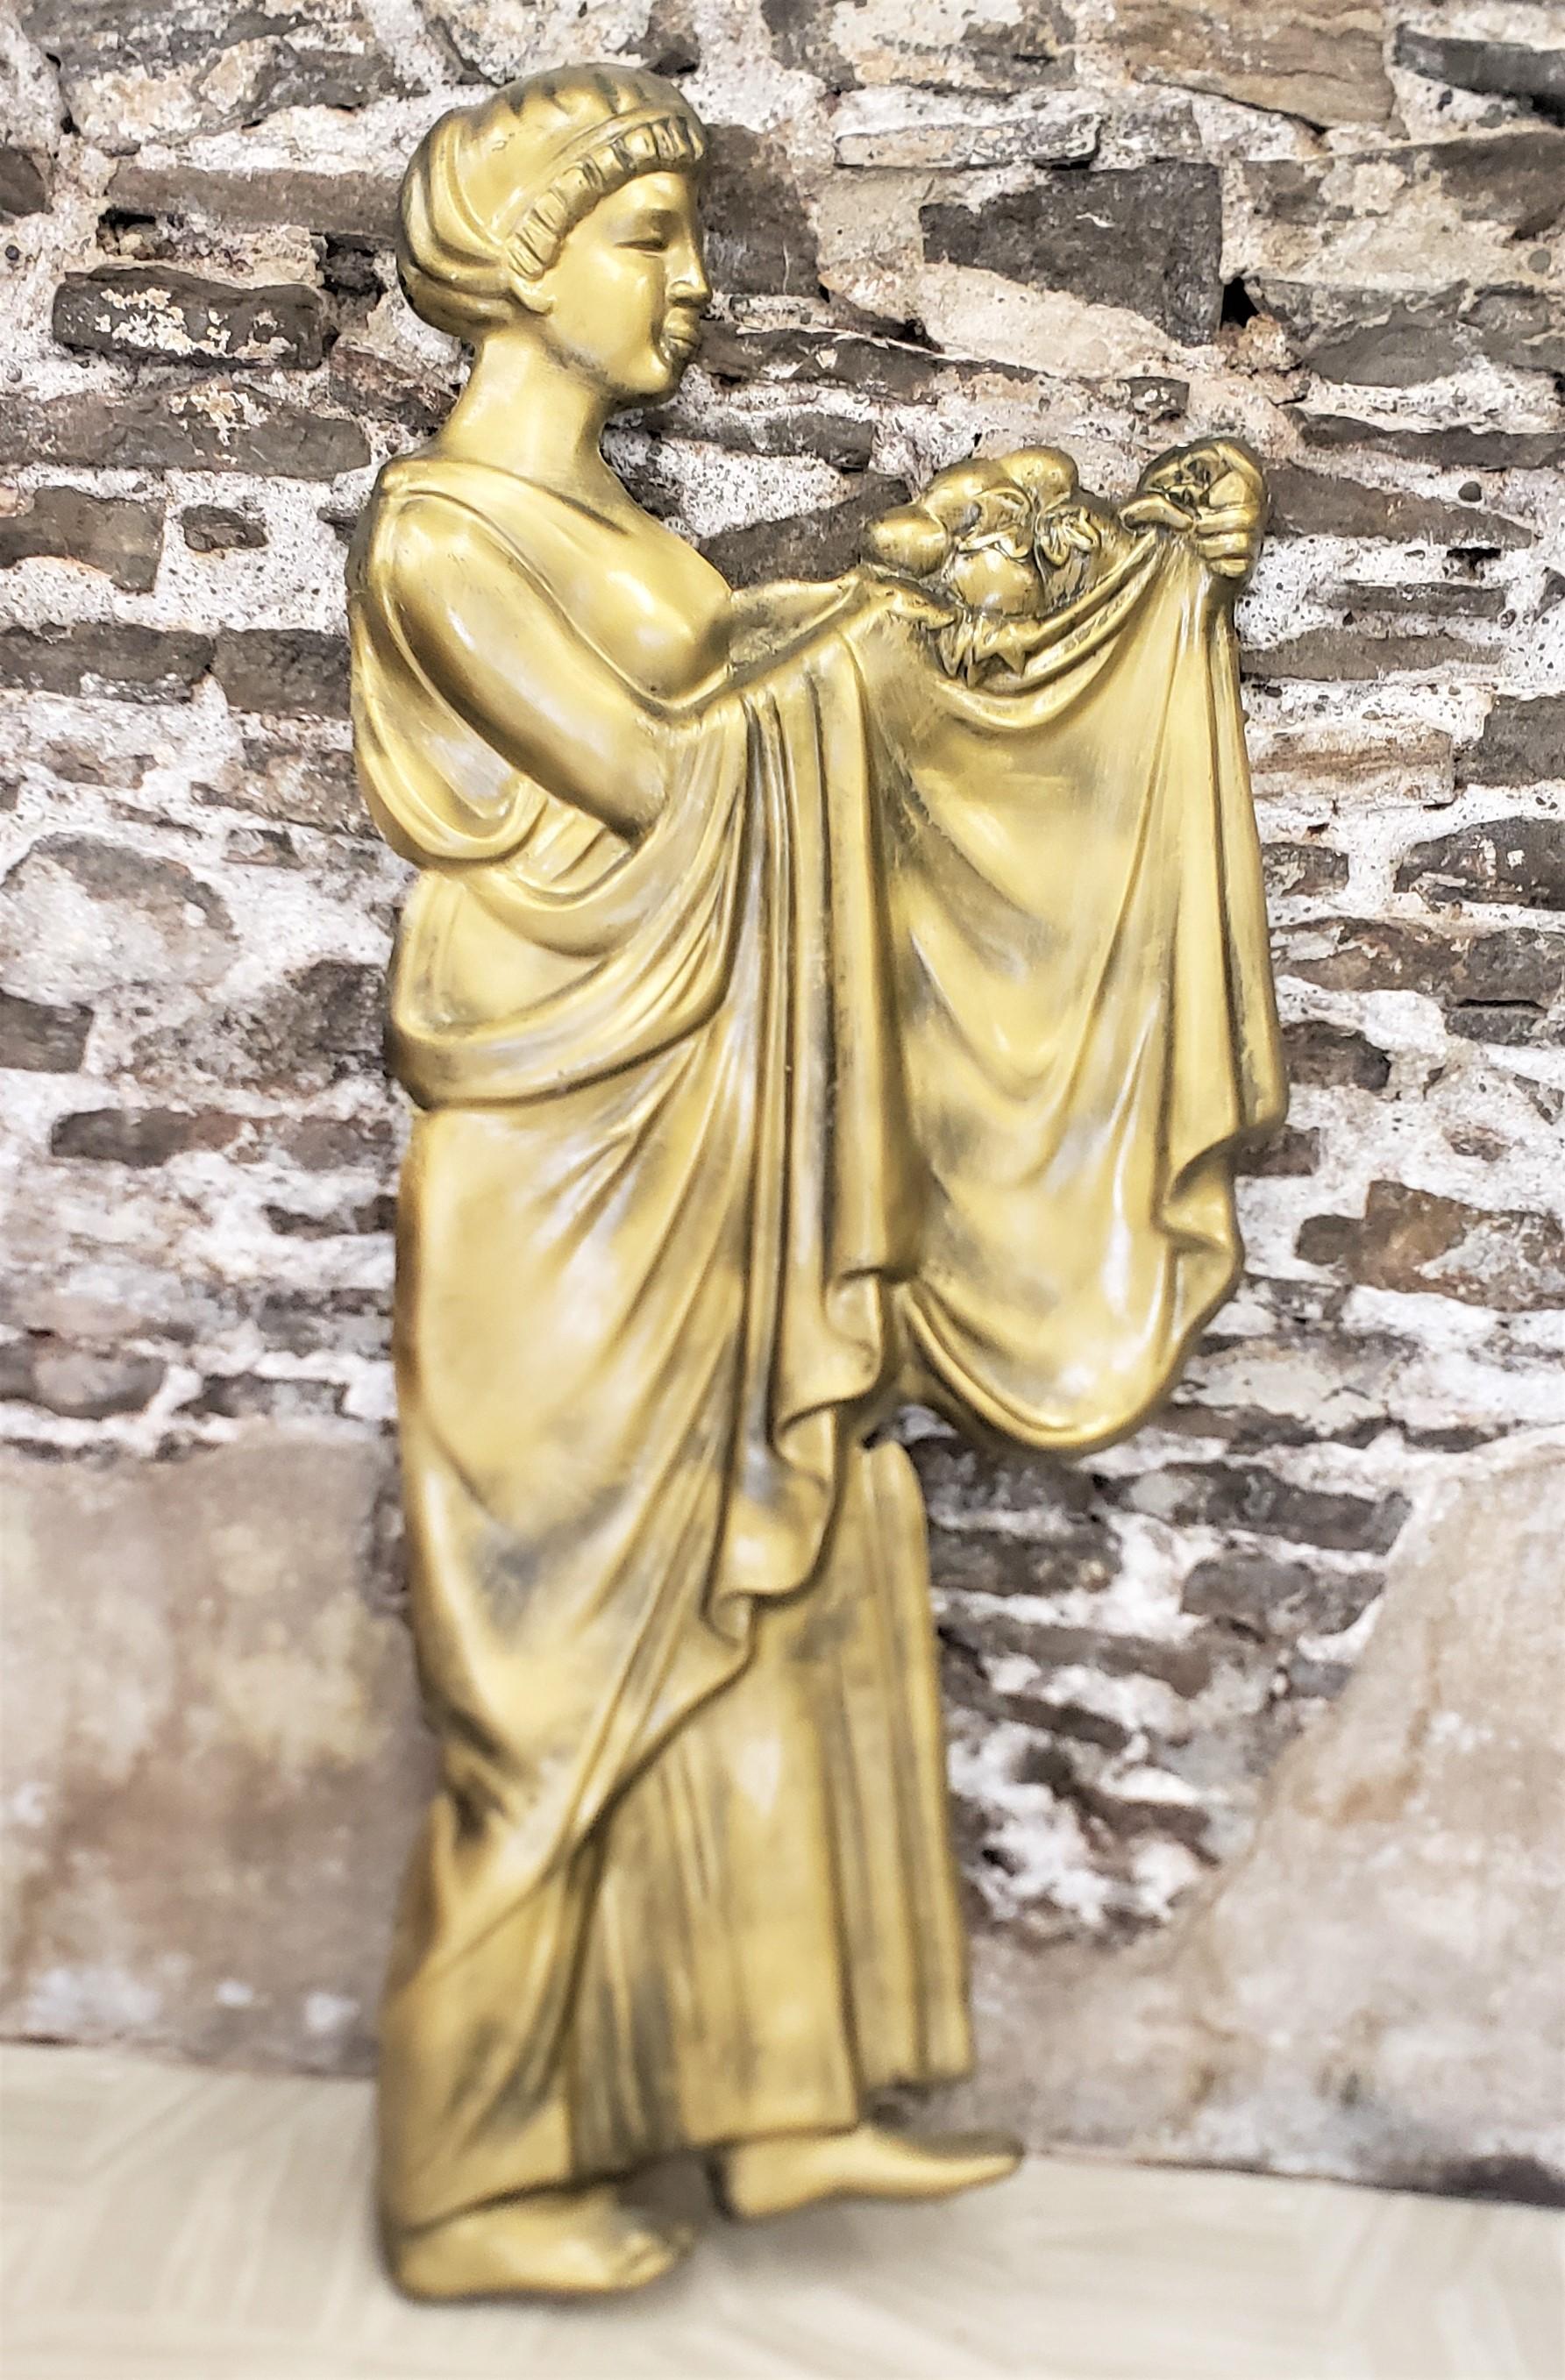 Diese Wandskulptur aus geformtem Fiberglas aus der Mitte des Jahrhunderts ist unsigniert, wurde aber vermutlich um 1960 in Kanada im neoklassischen Revival-Stil hergestellt. Das Relief zeigt eine halbnackte junge Frau in langen wallenden Gewändern,